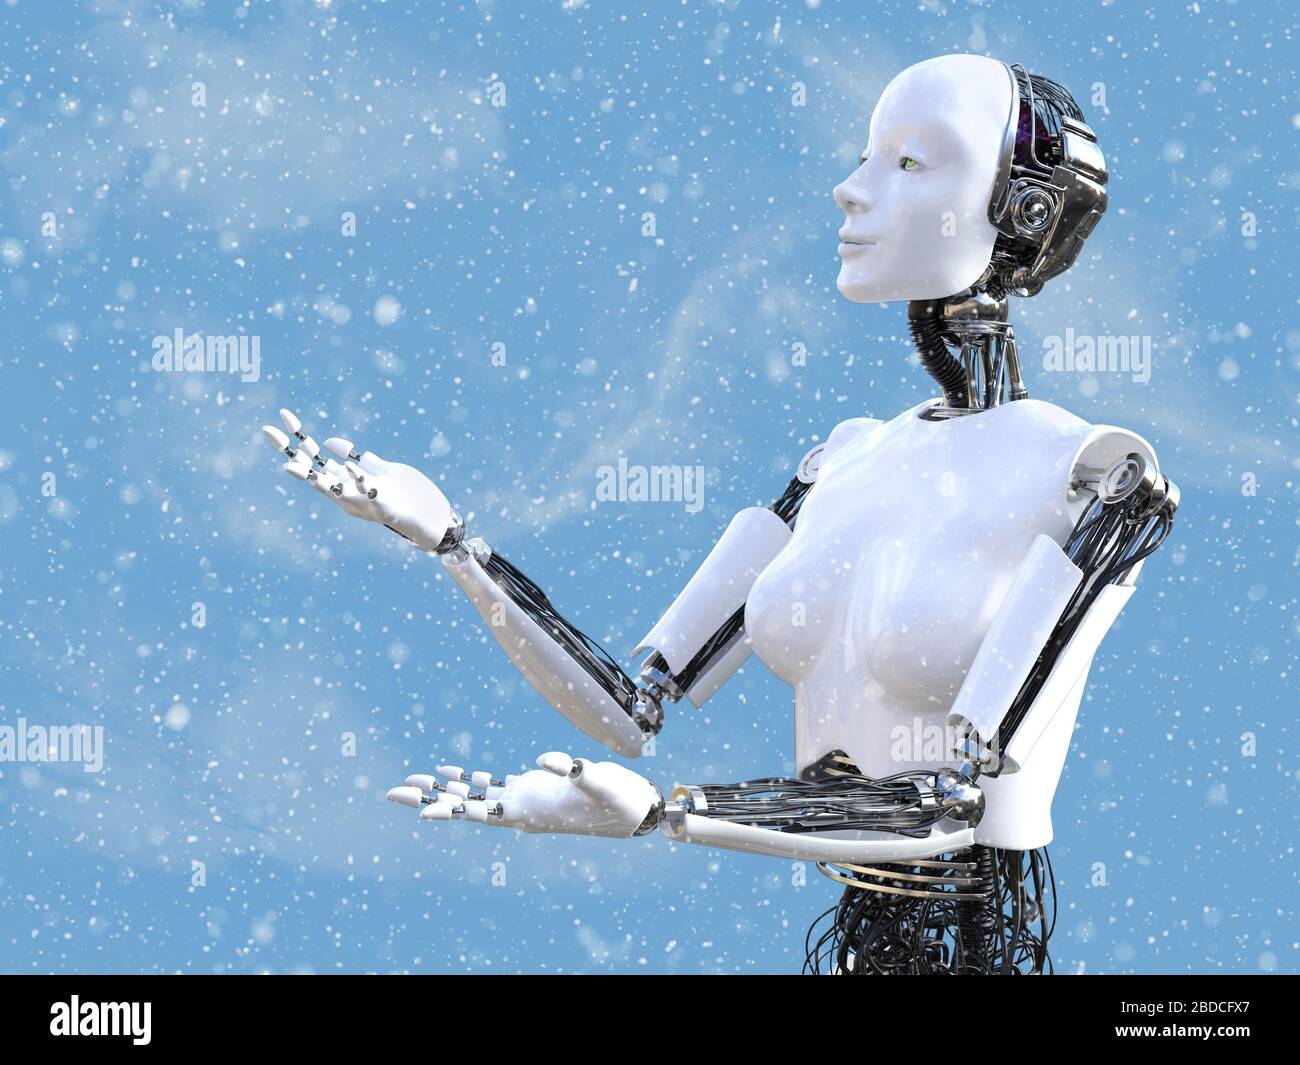 3-3, un robot féminin regardant la neige dans l'air avec ses bras et ses mains dehors pour attraper les flocons de neige tombant du ciel. Banque D'Images